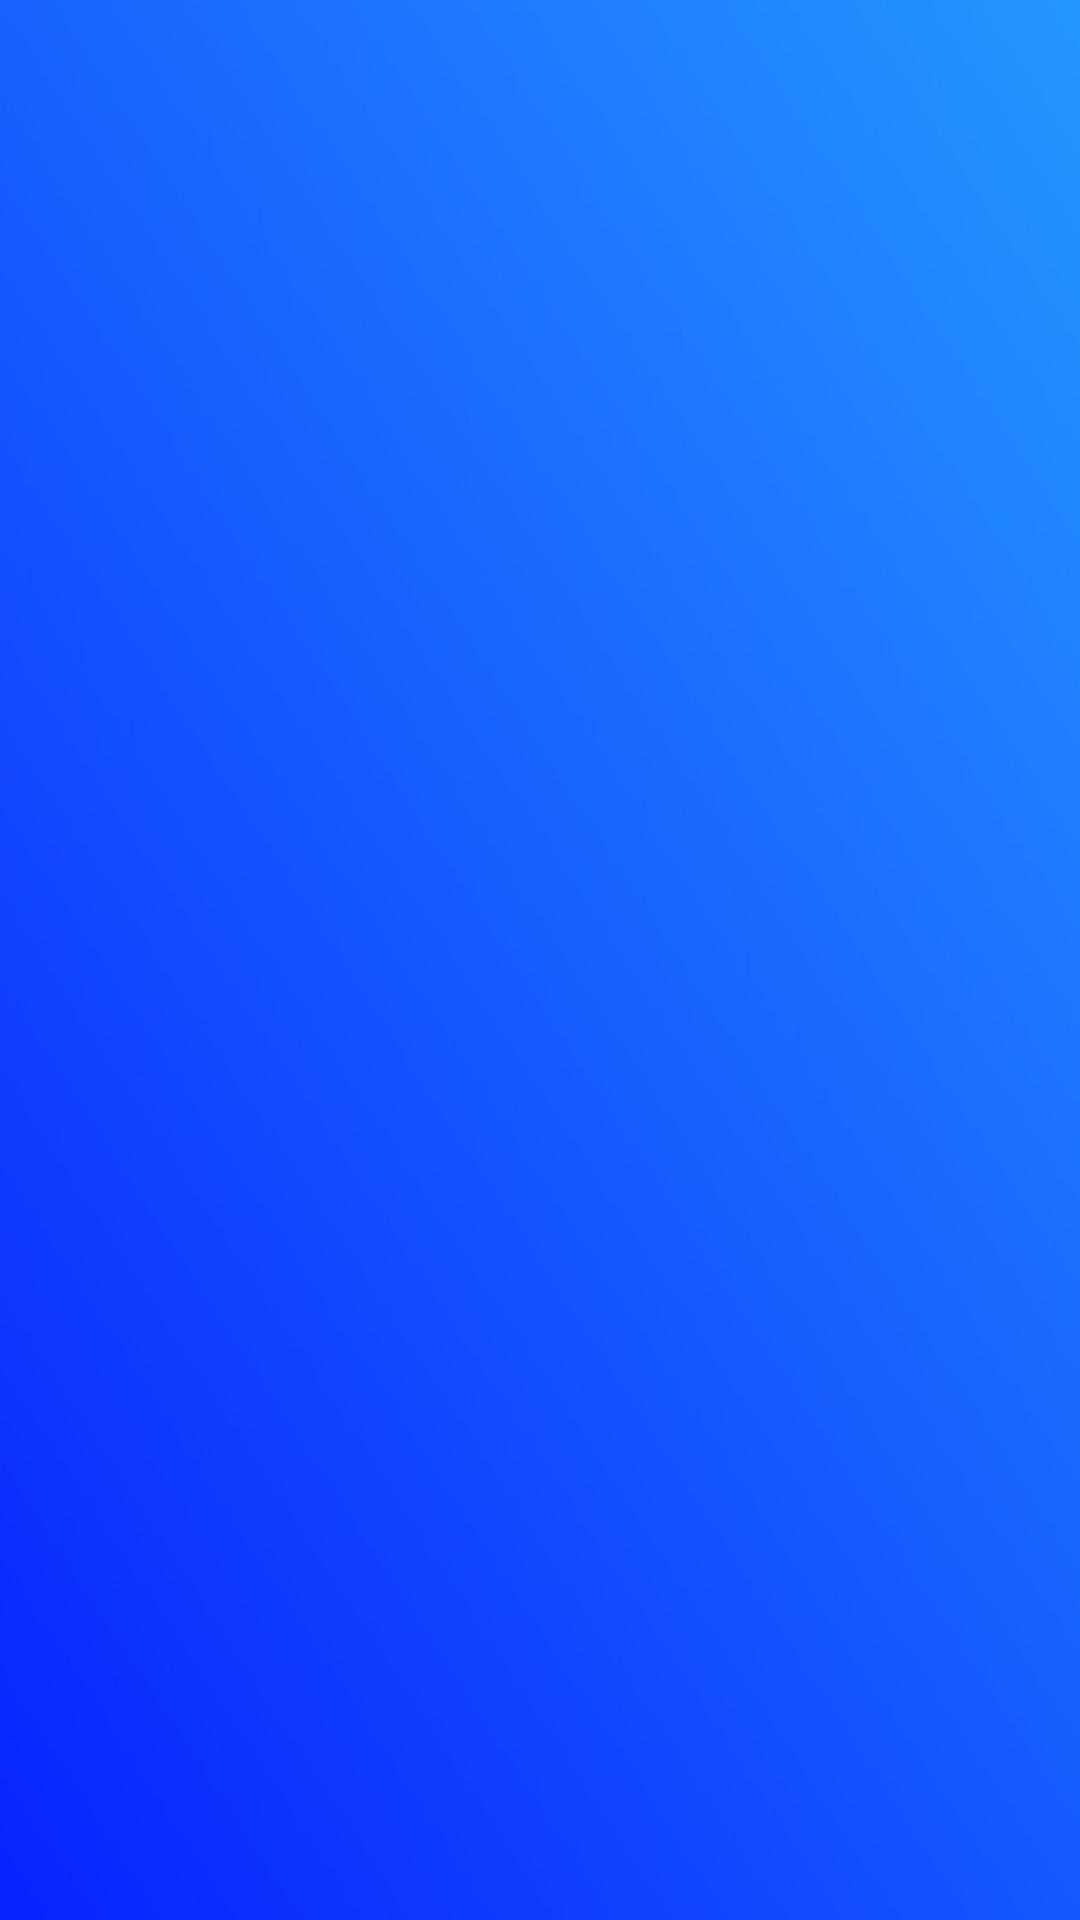 einfache farbtapete,kobaltblau,blau,elektrisches blau,tagsüber,himmel